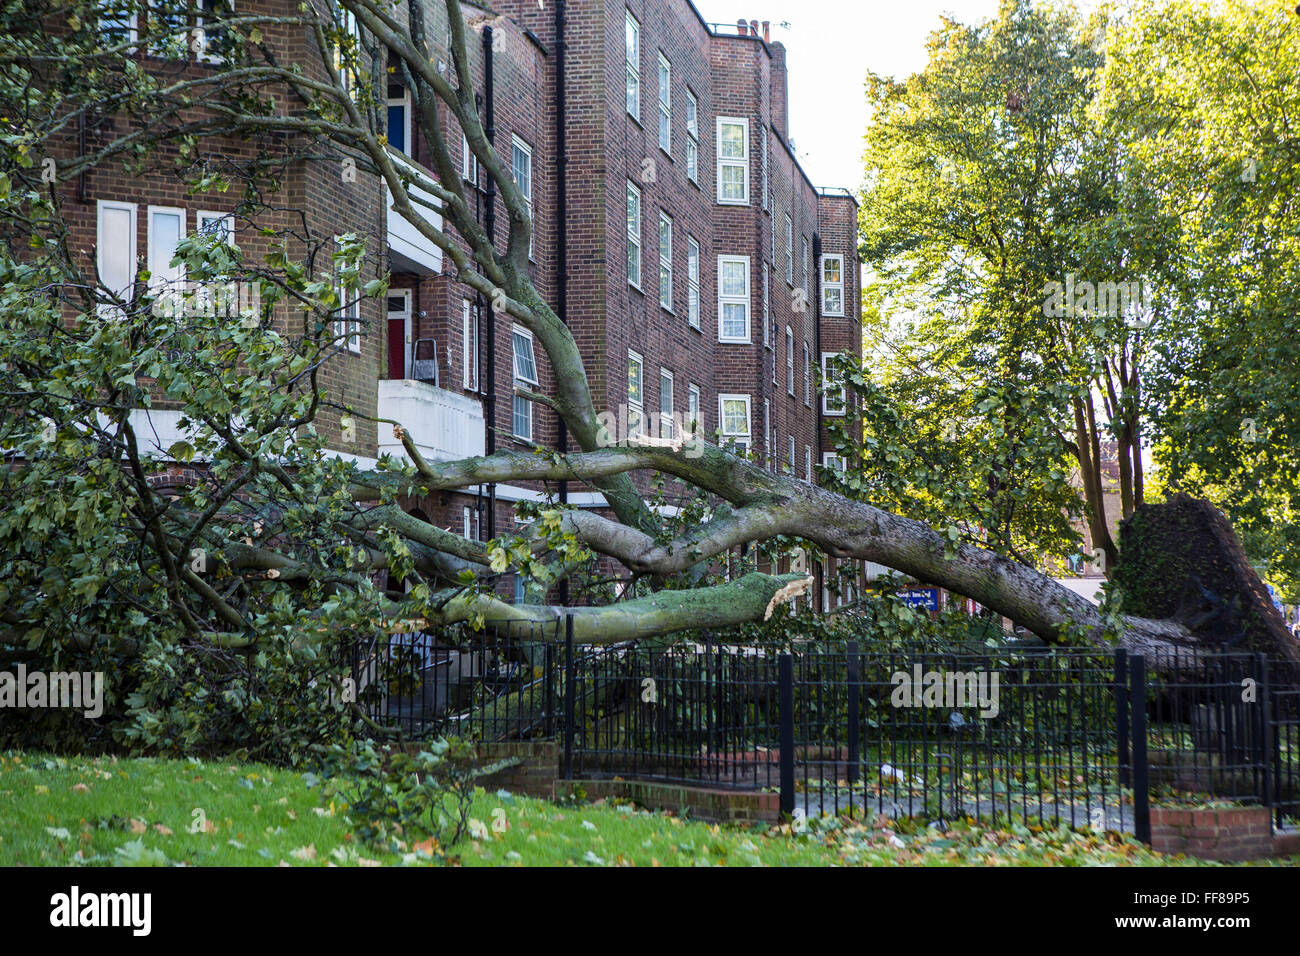 Un gran árbol, con sus raíces rasgado fuera del suelo, derribados en Stamford Hill Estate, Londres, Reino Unido. Los daños causados por las tormentas severas. Foto de stock